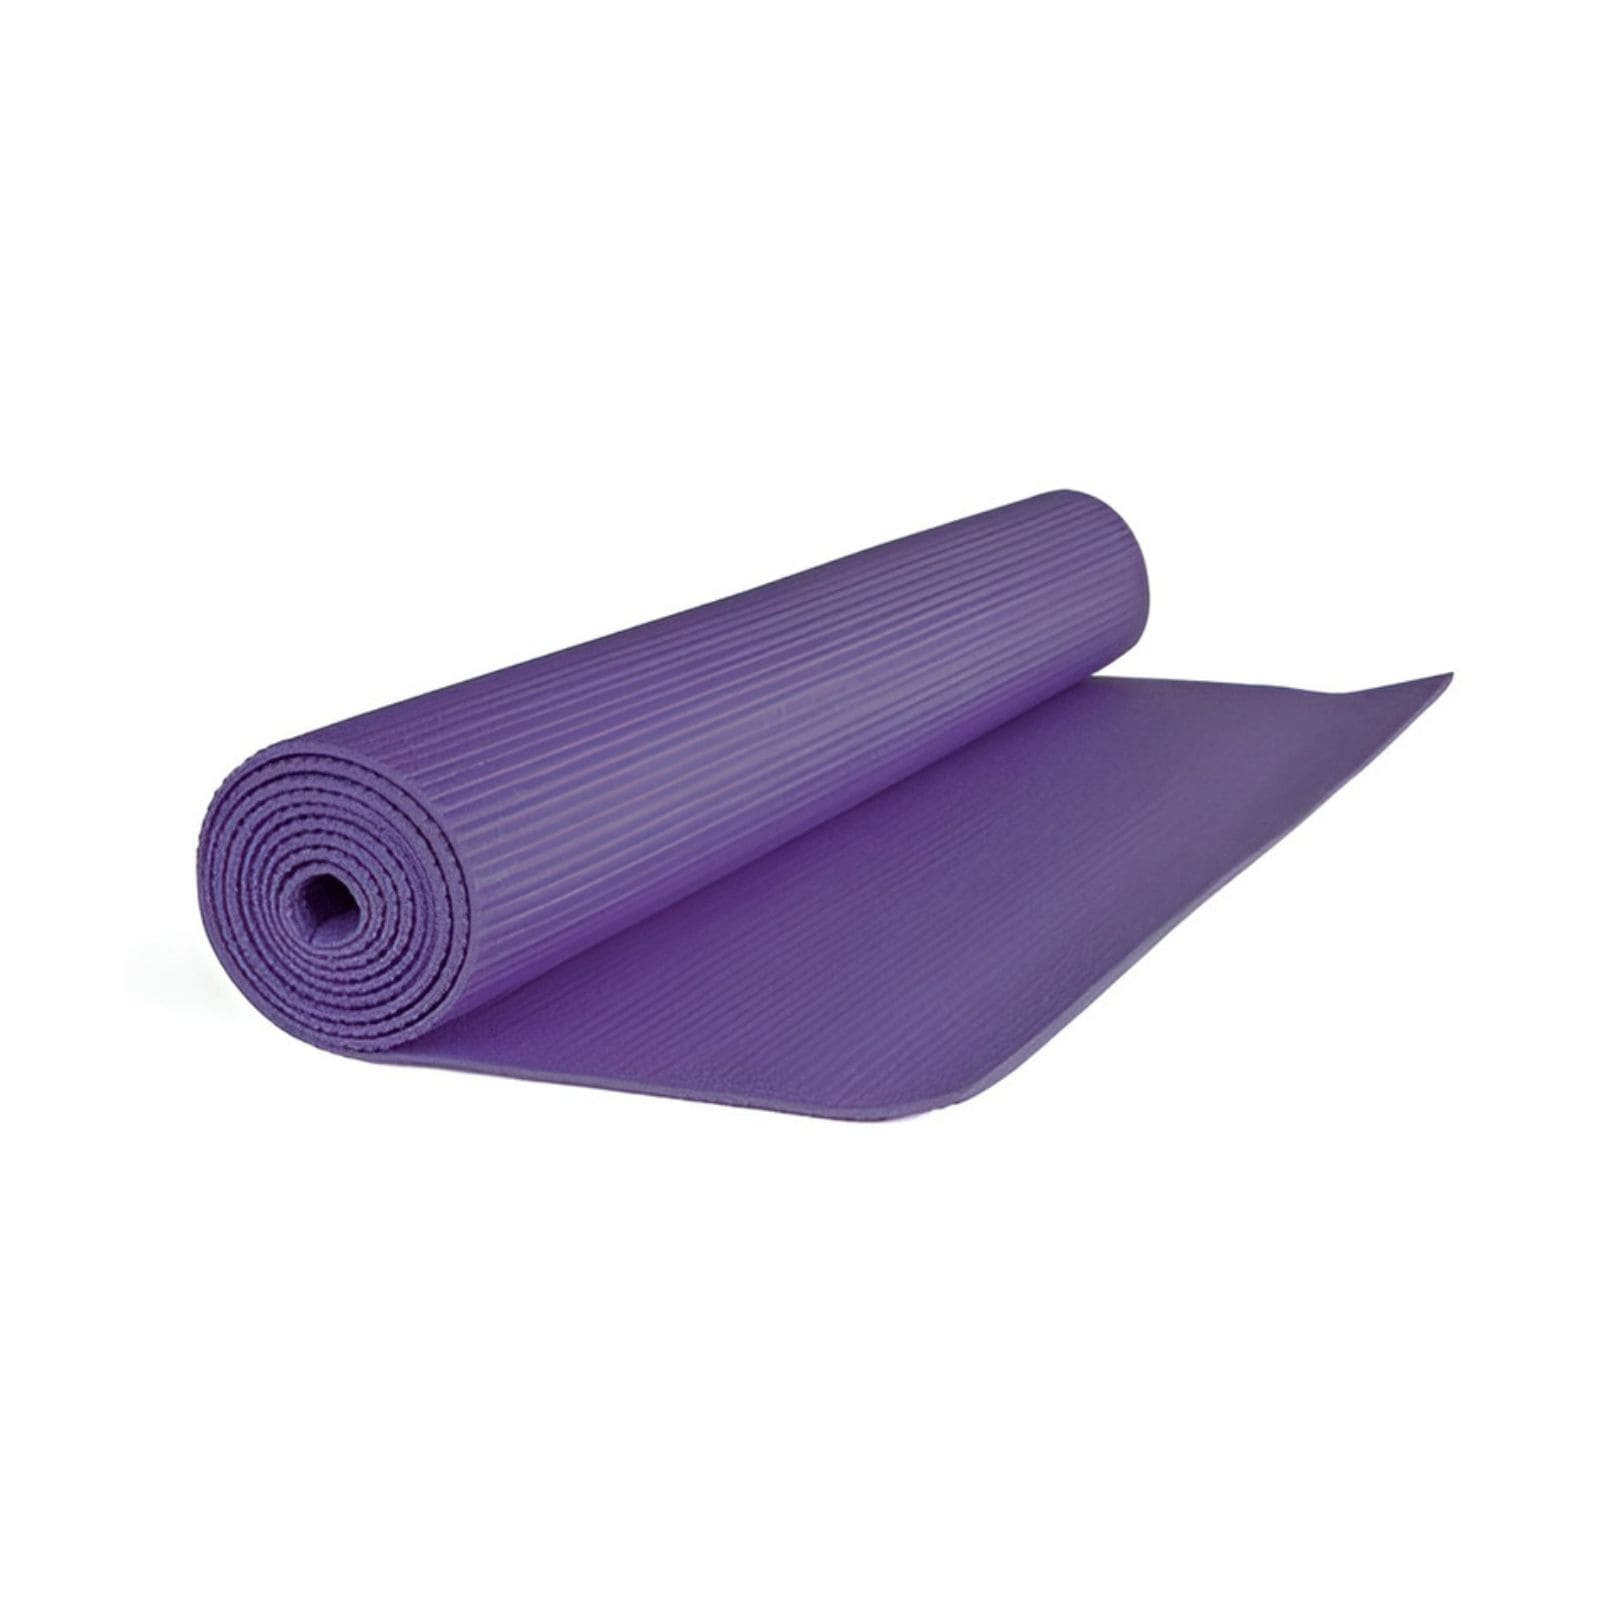 Materassino per Yoga in PVC con Superficie Antiscivolo